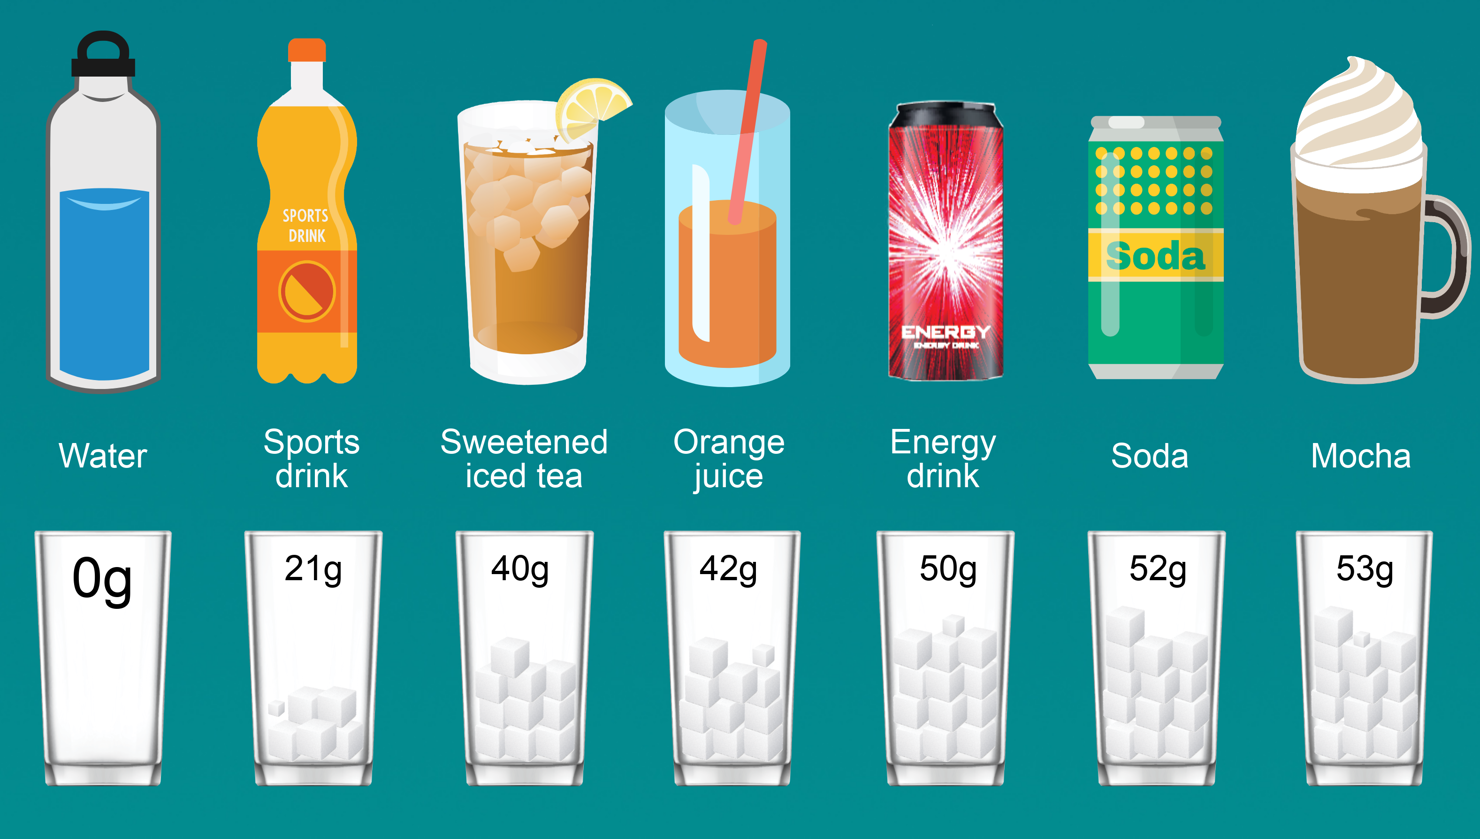 Hàm lượng đường có trong một số loại đồ uống (tính trong 100 ml).  Nguồn: reallifegoodfood